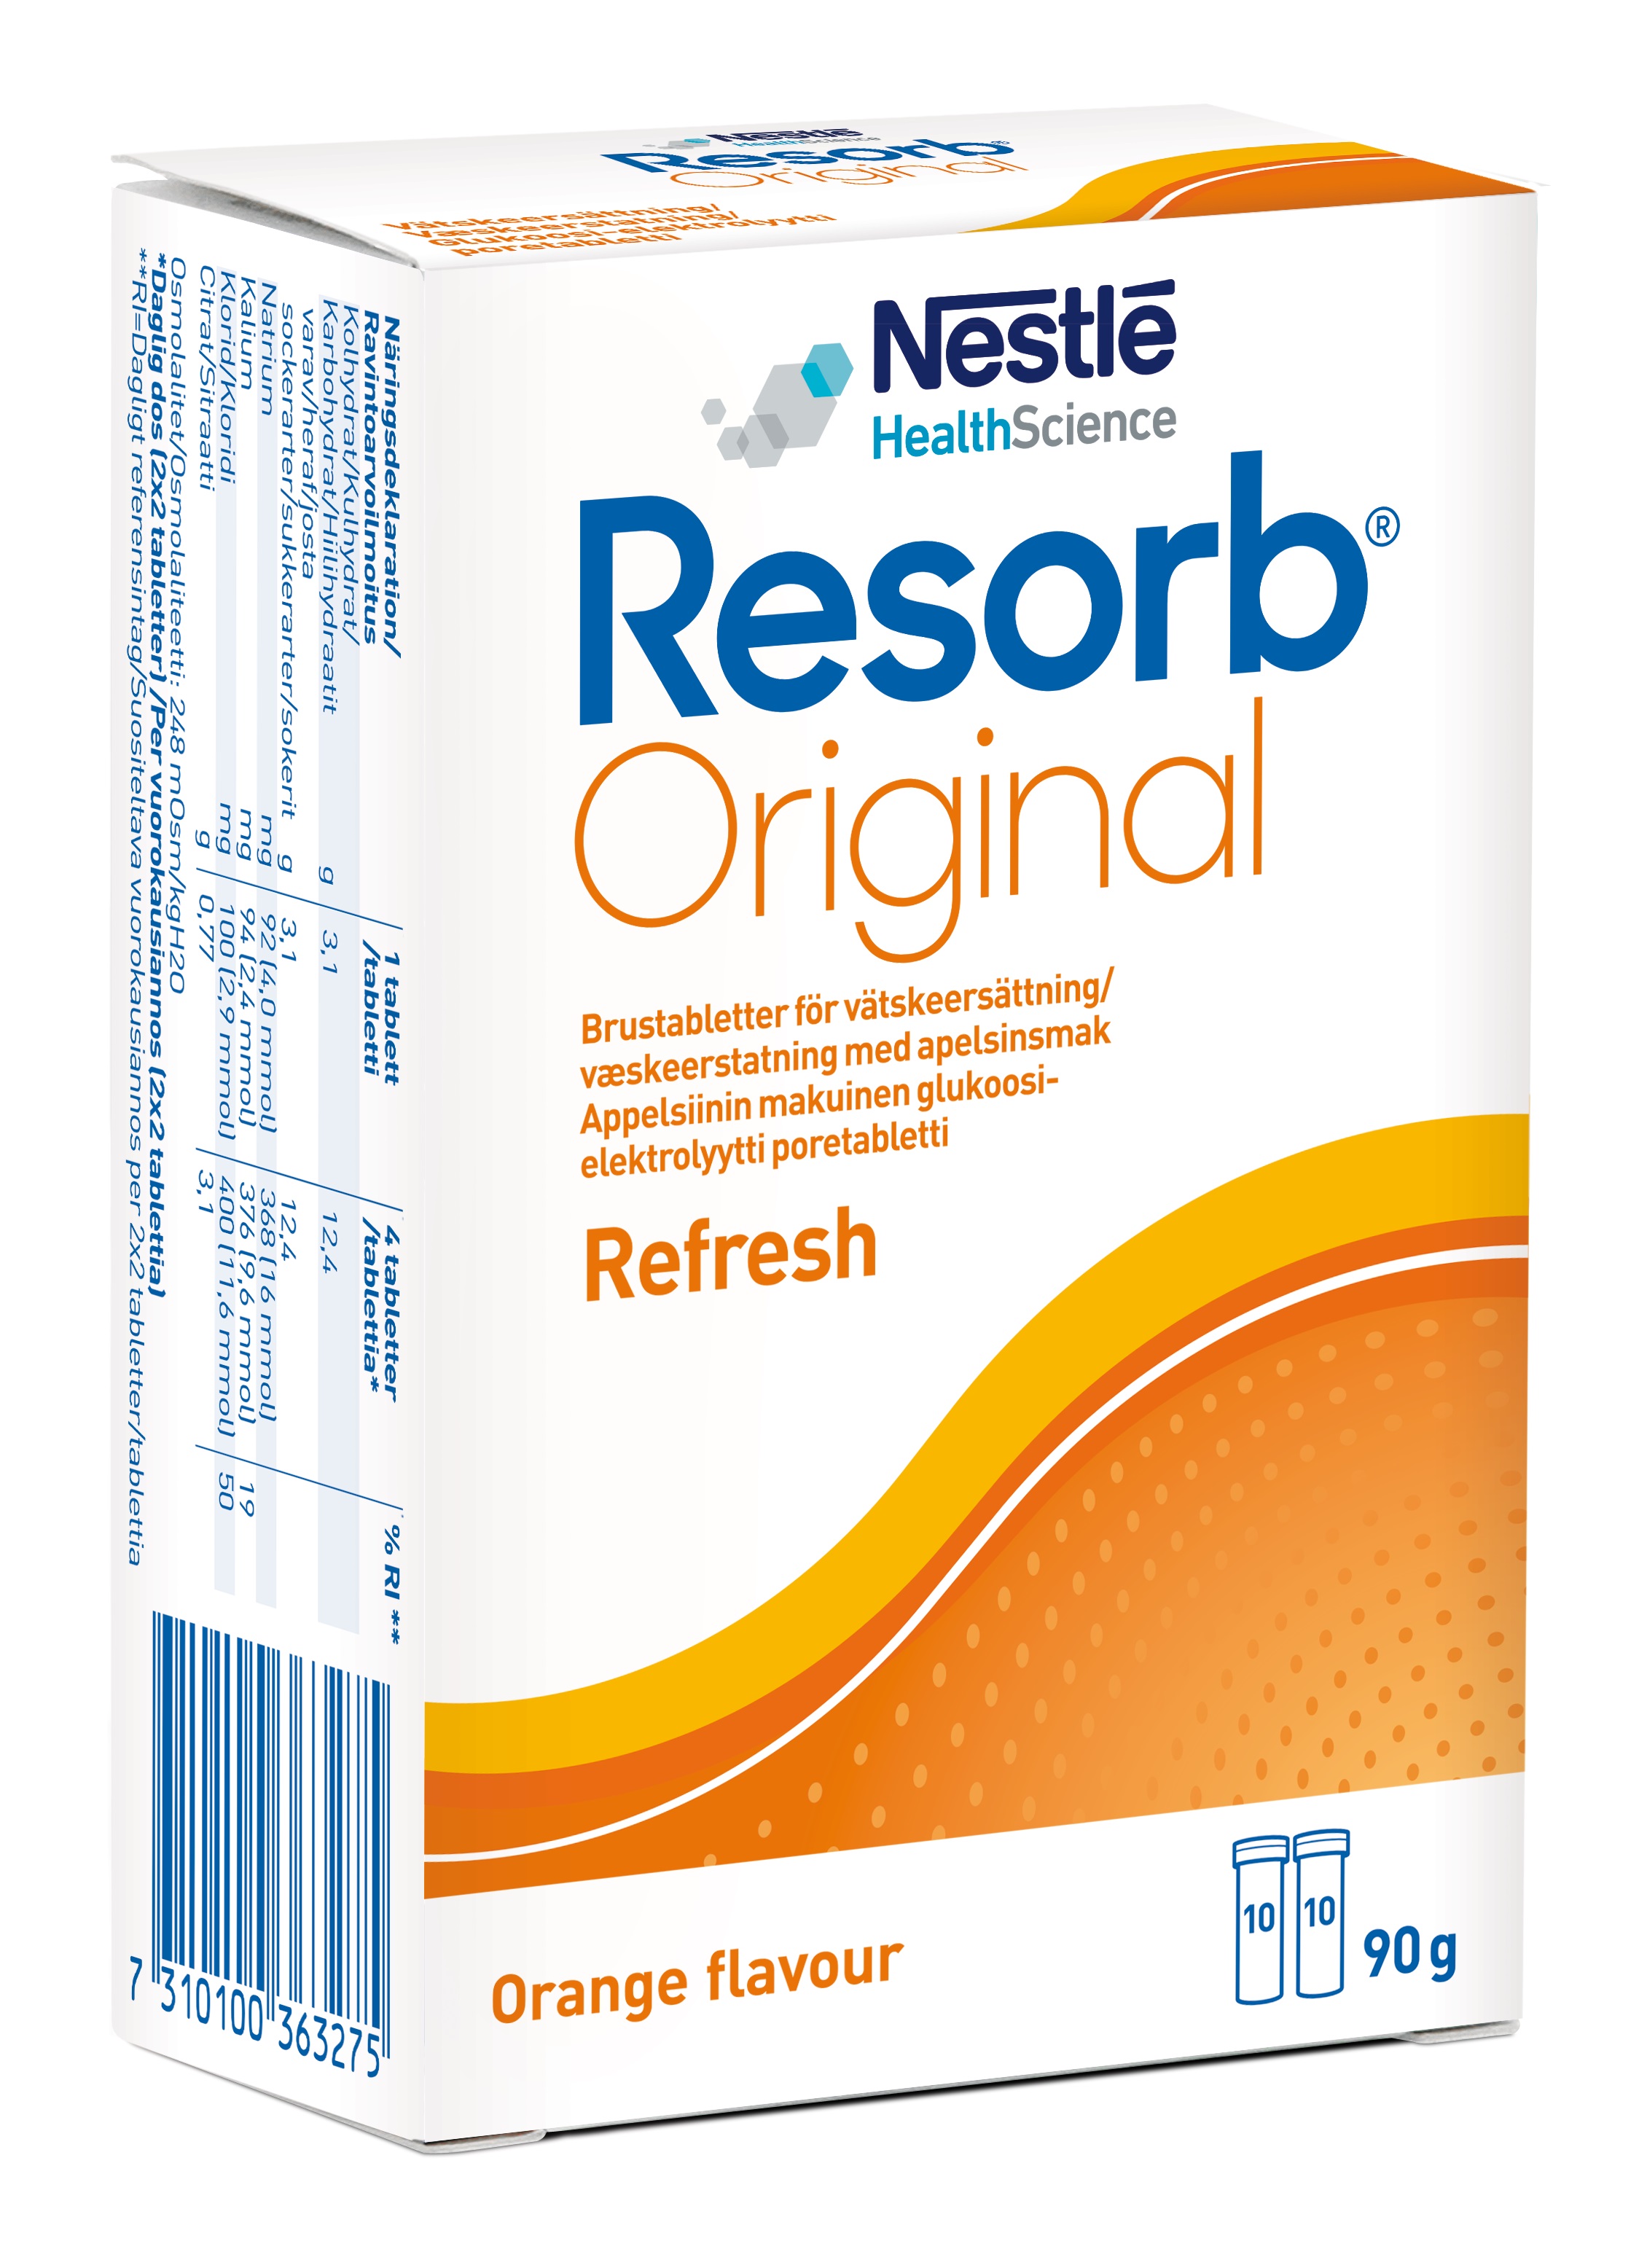 Resorb Original Refresh Brusetabletter, Appelsinsmak, 2 x 10 stk.